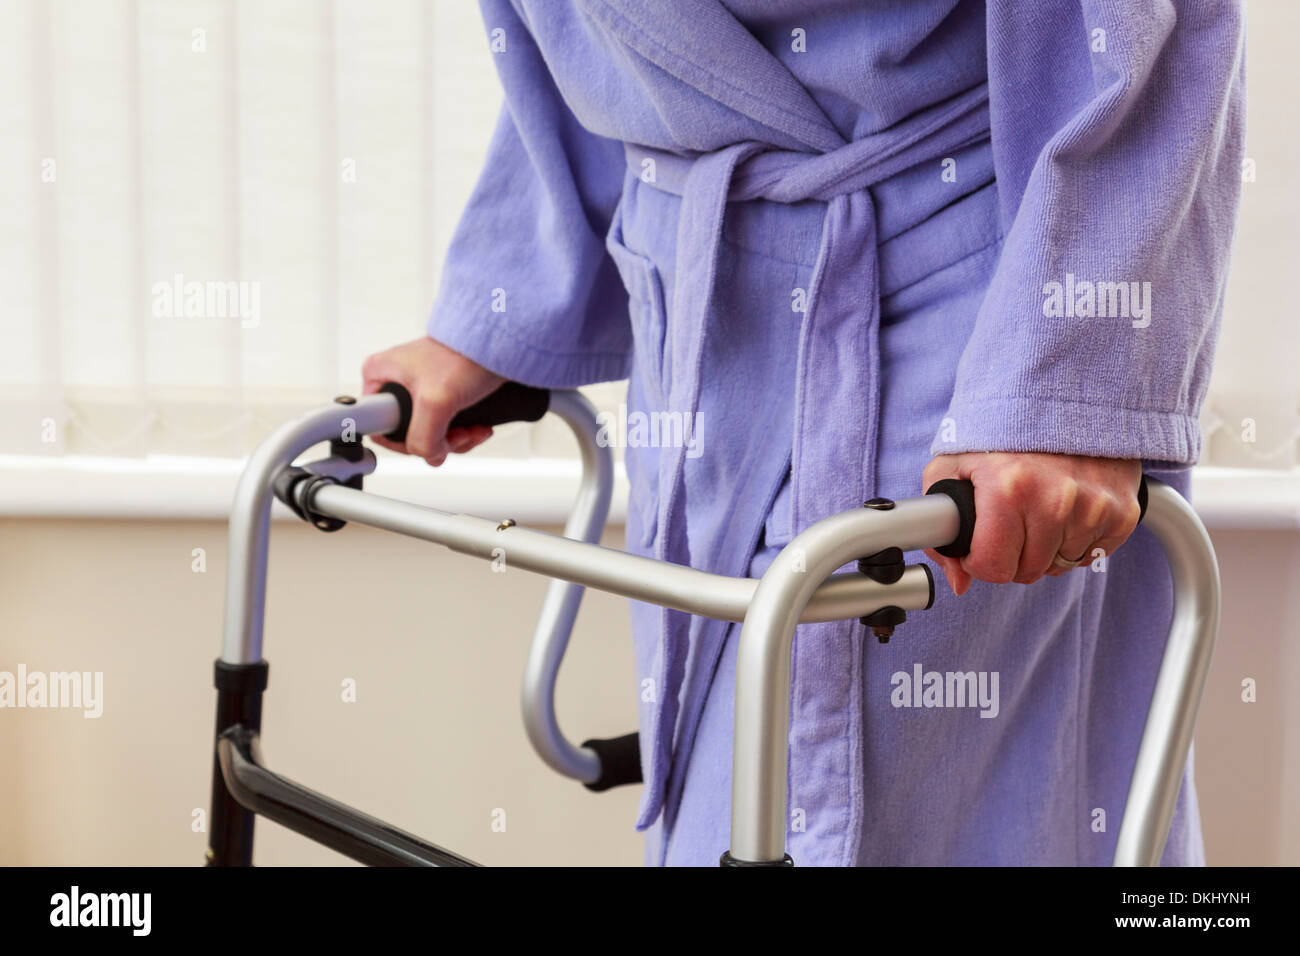 Anziana donna senior persona anziana mano azienda utilizzando un zimmer camminatore del telaio o carrello di supporto per camminare in una casa. Inghilterra Regno Unito Gran Bretagna Foto Stock